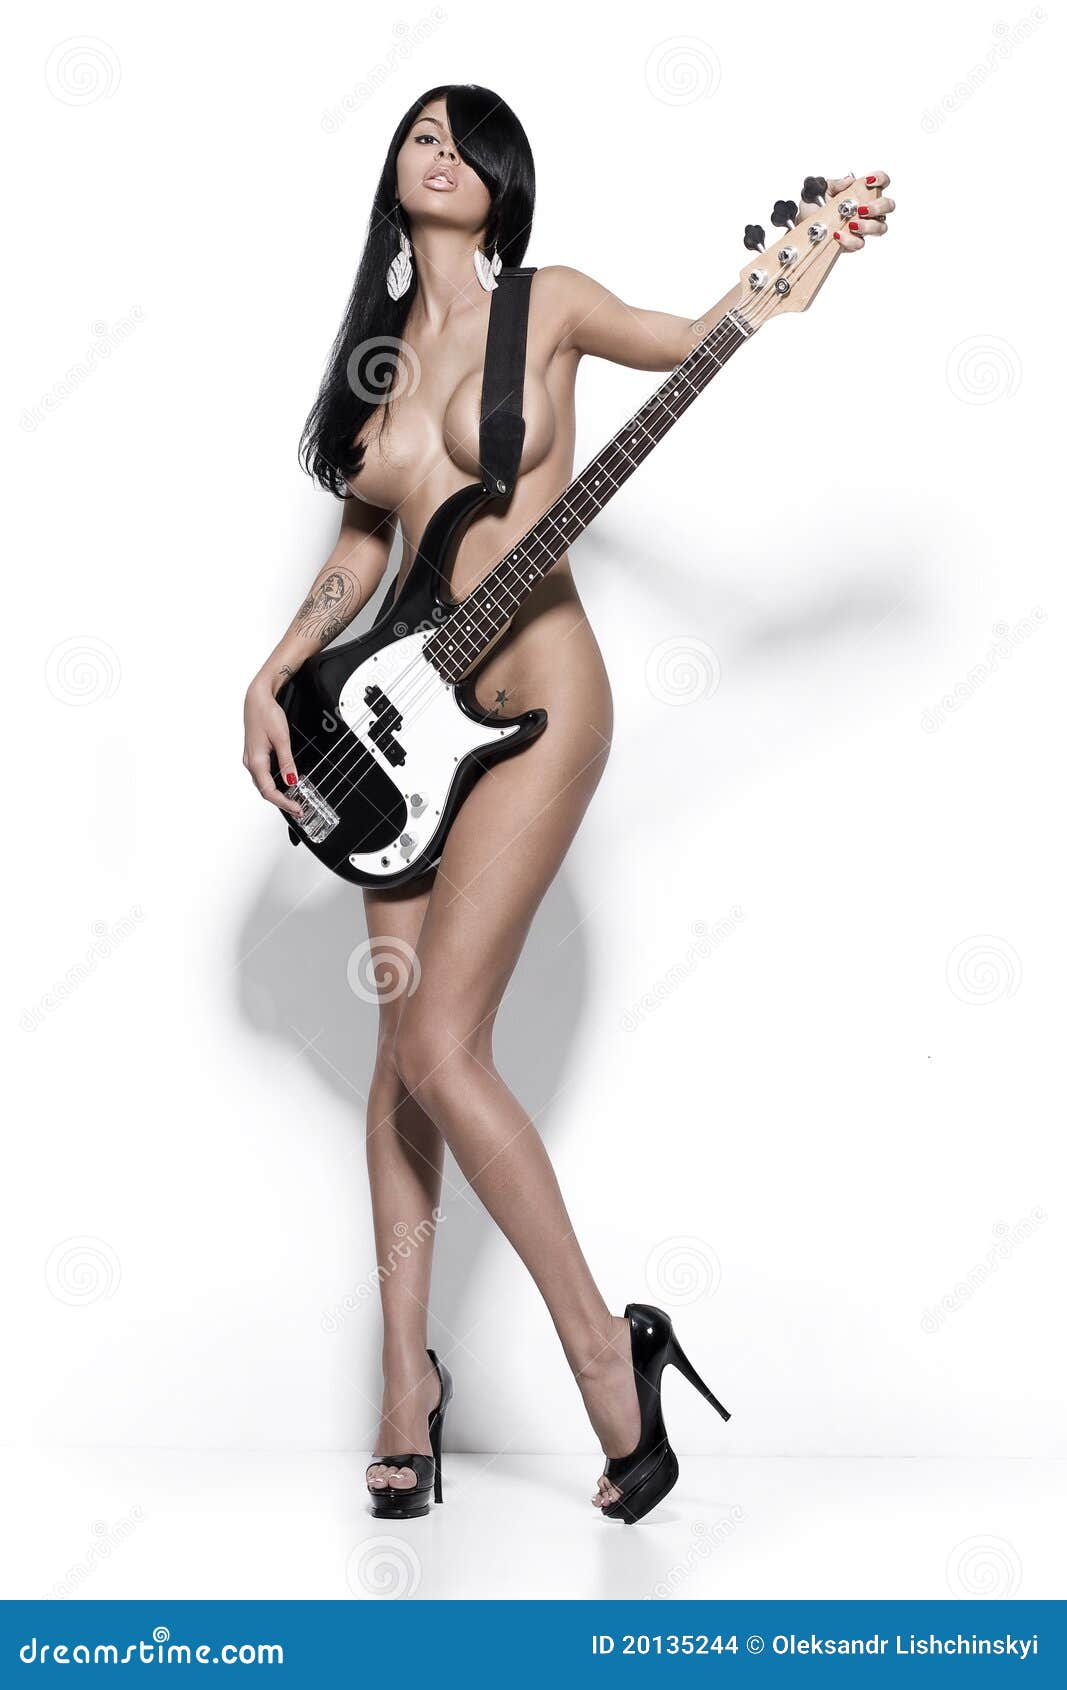 diana yarbrough share nude girl with guitar photos